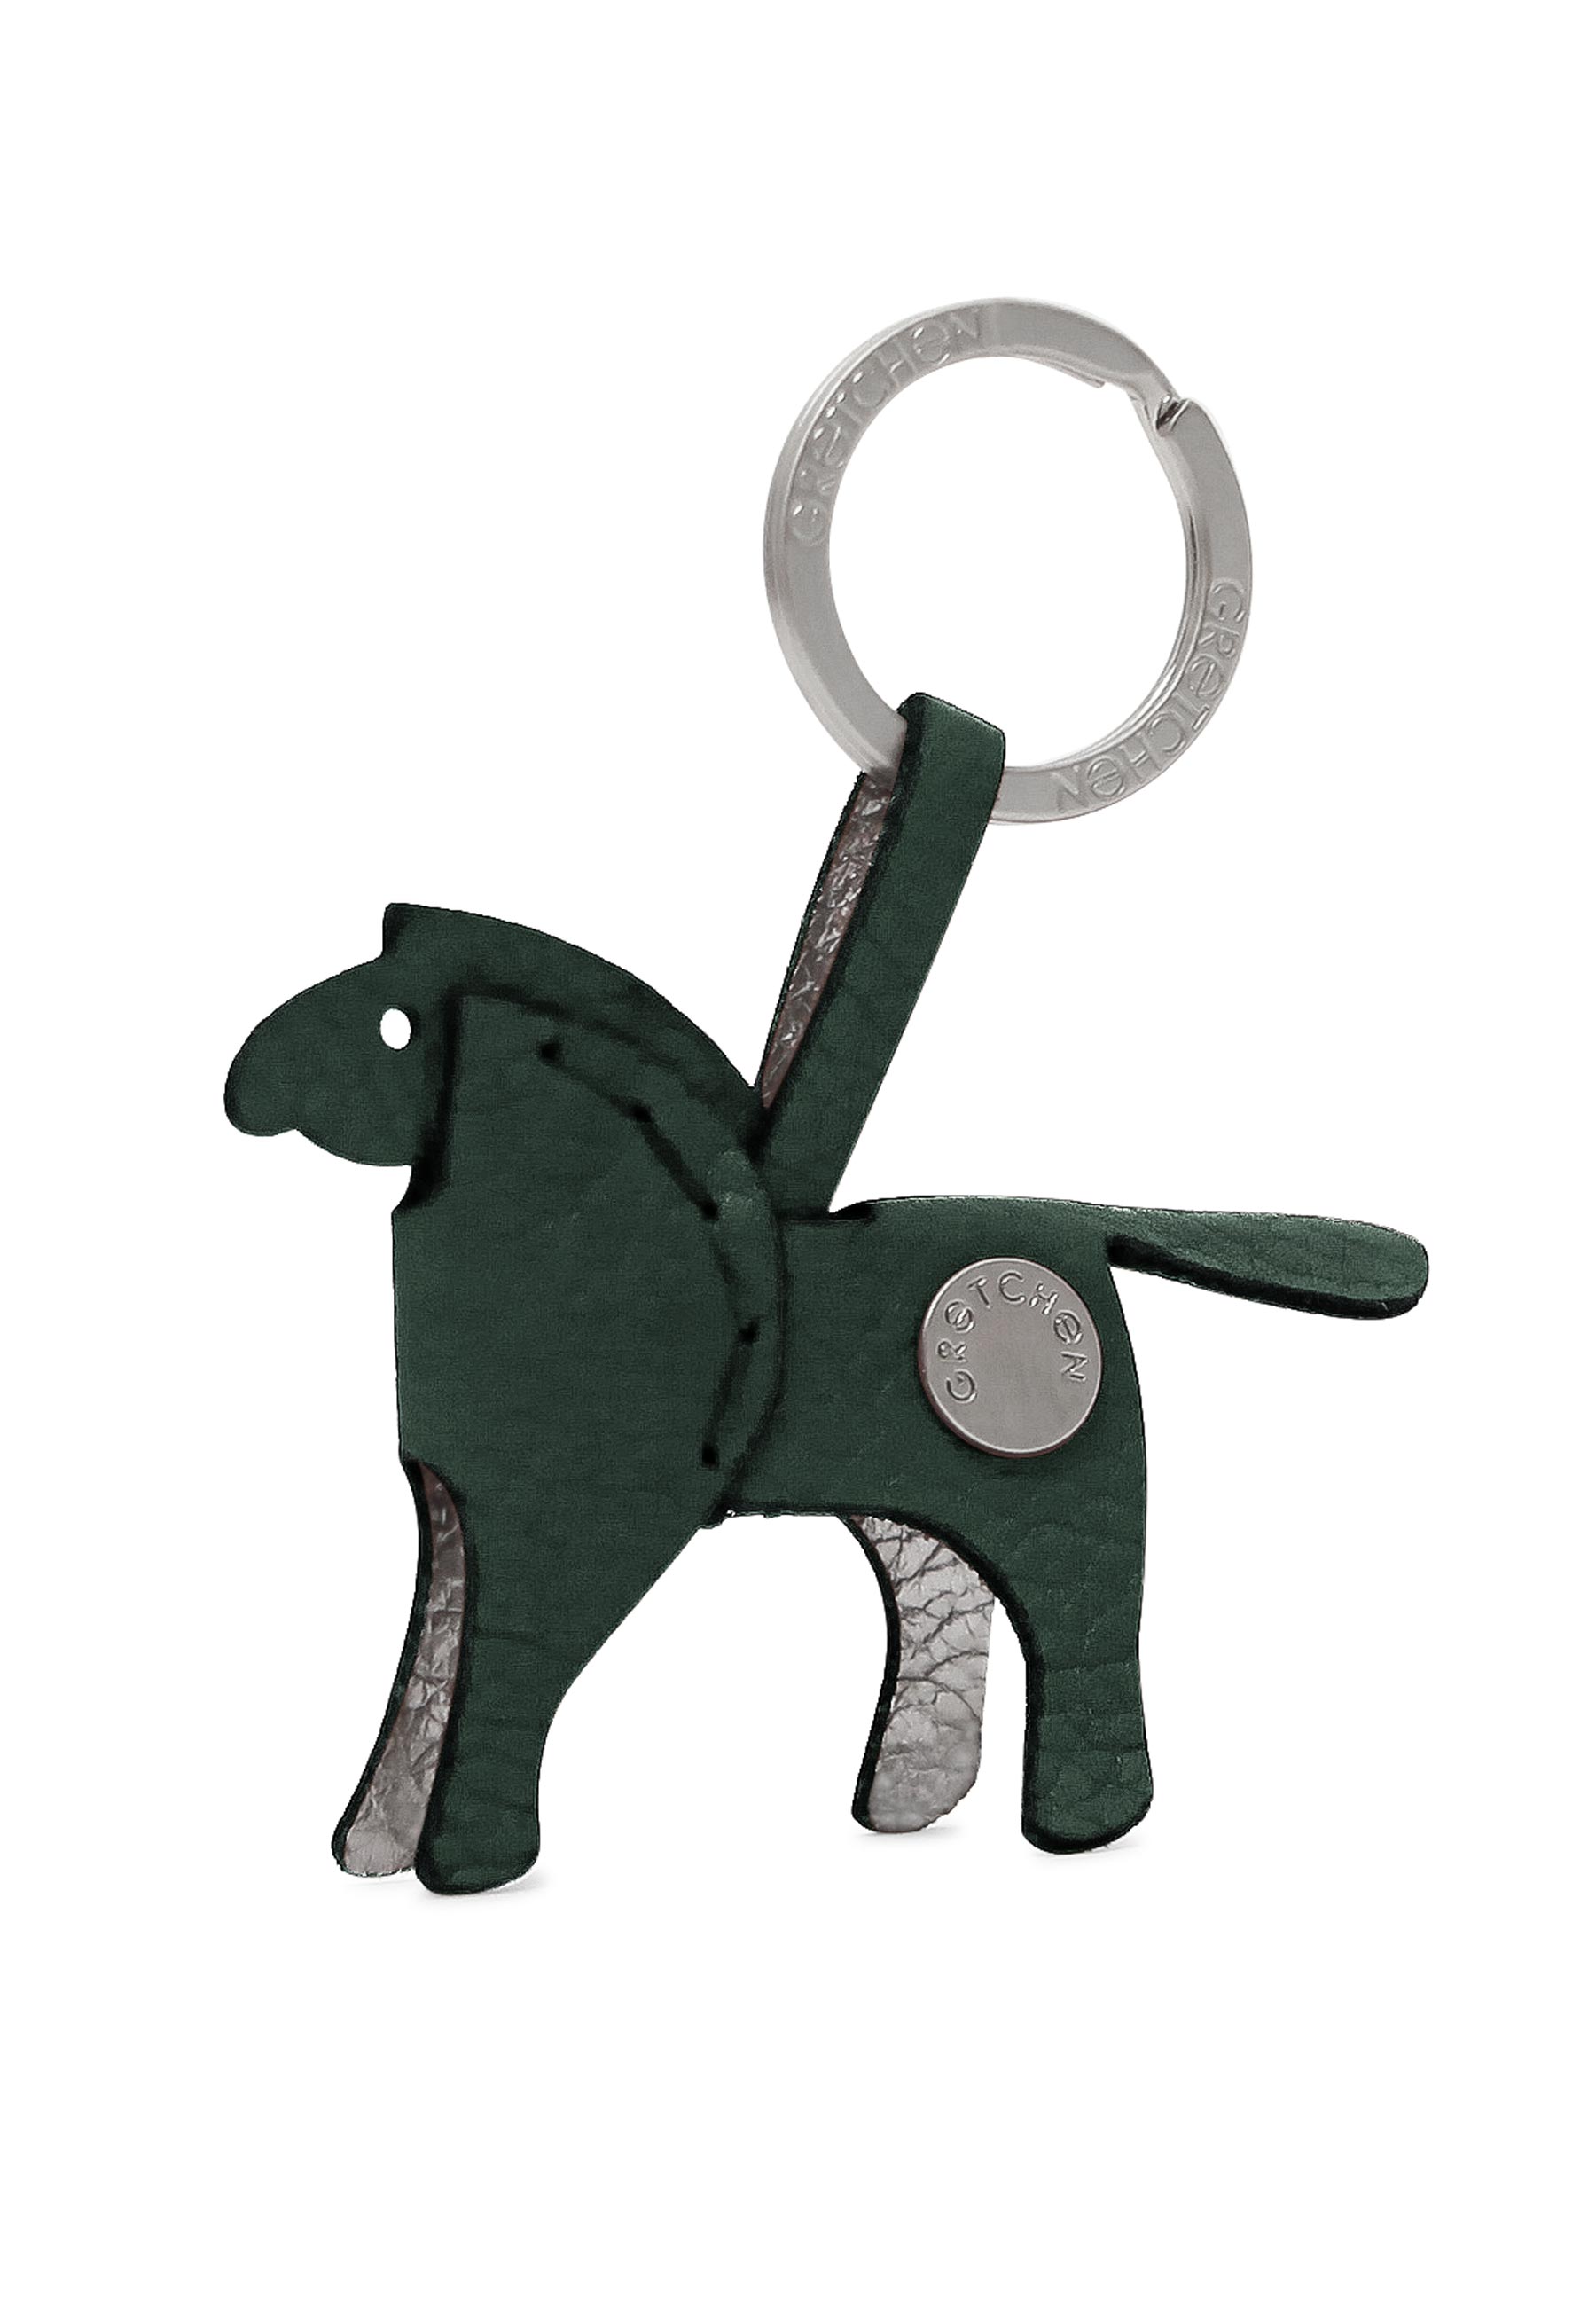 Hochwertiger Schlüsselanhänger in Pony-From von mygretchen.com | Gretchen | Schlüsselanhänger